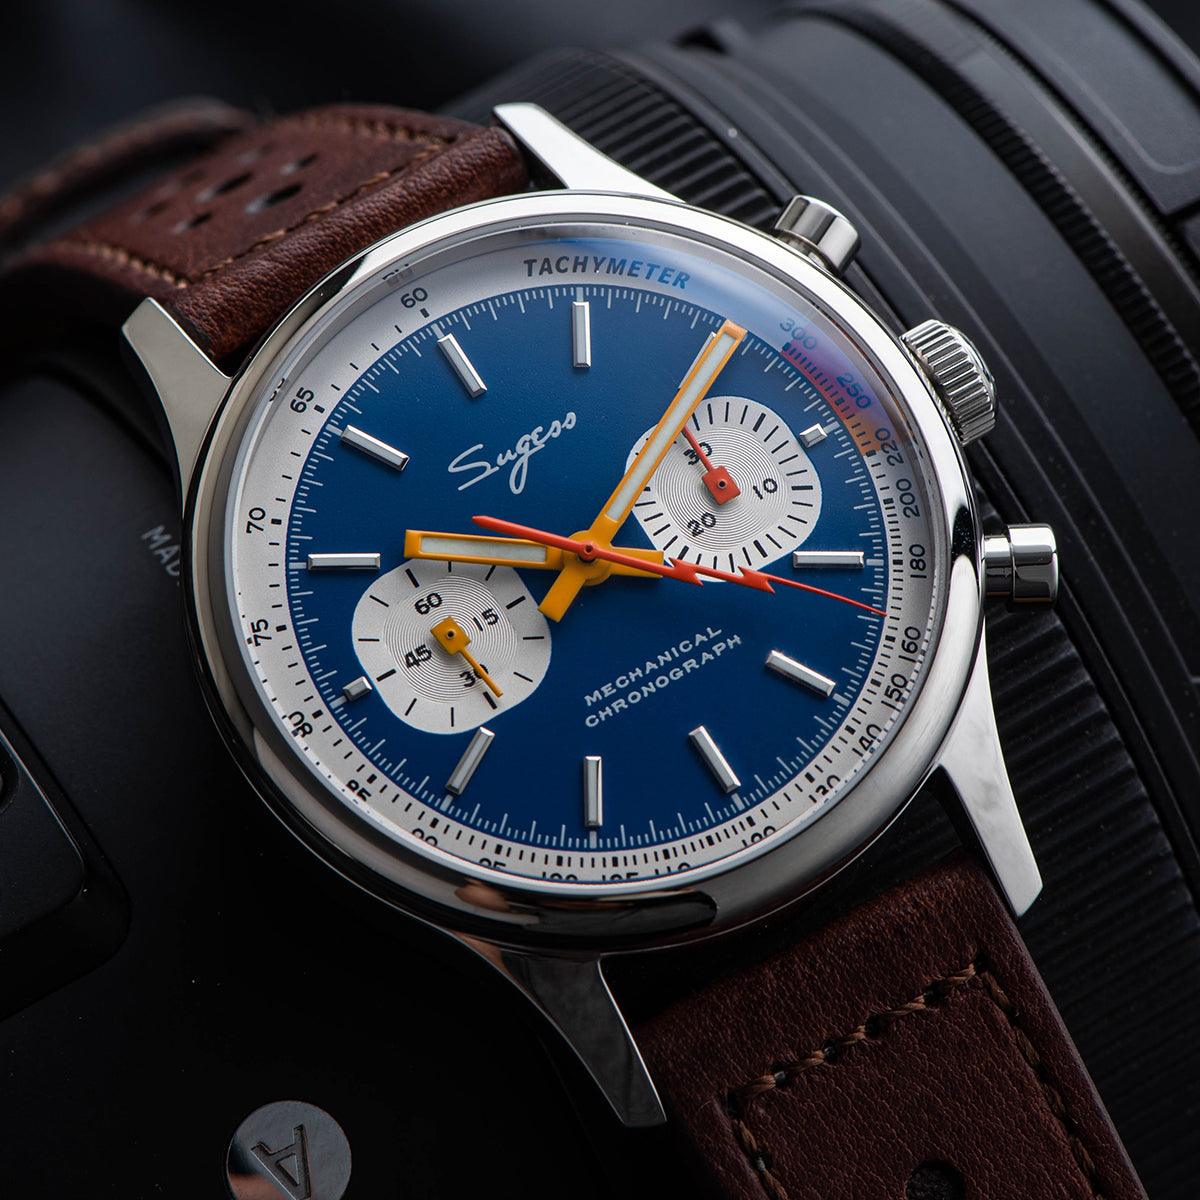 Sugess Mechanical Men's Watch 21 Gem Upgraded Seagull Gooseneck Movement Lightning Men's Watch 1901 Waterproof - Murphy Johnson Watches Co.